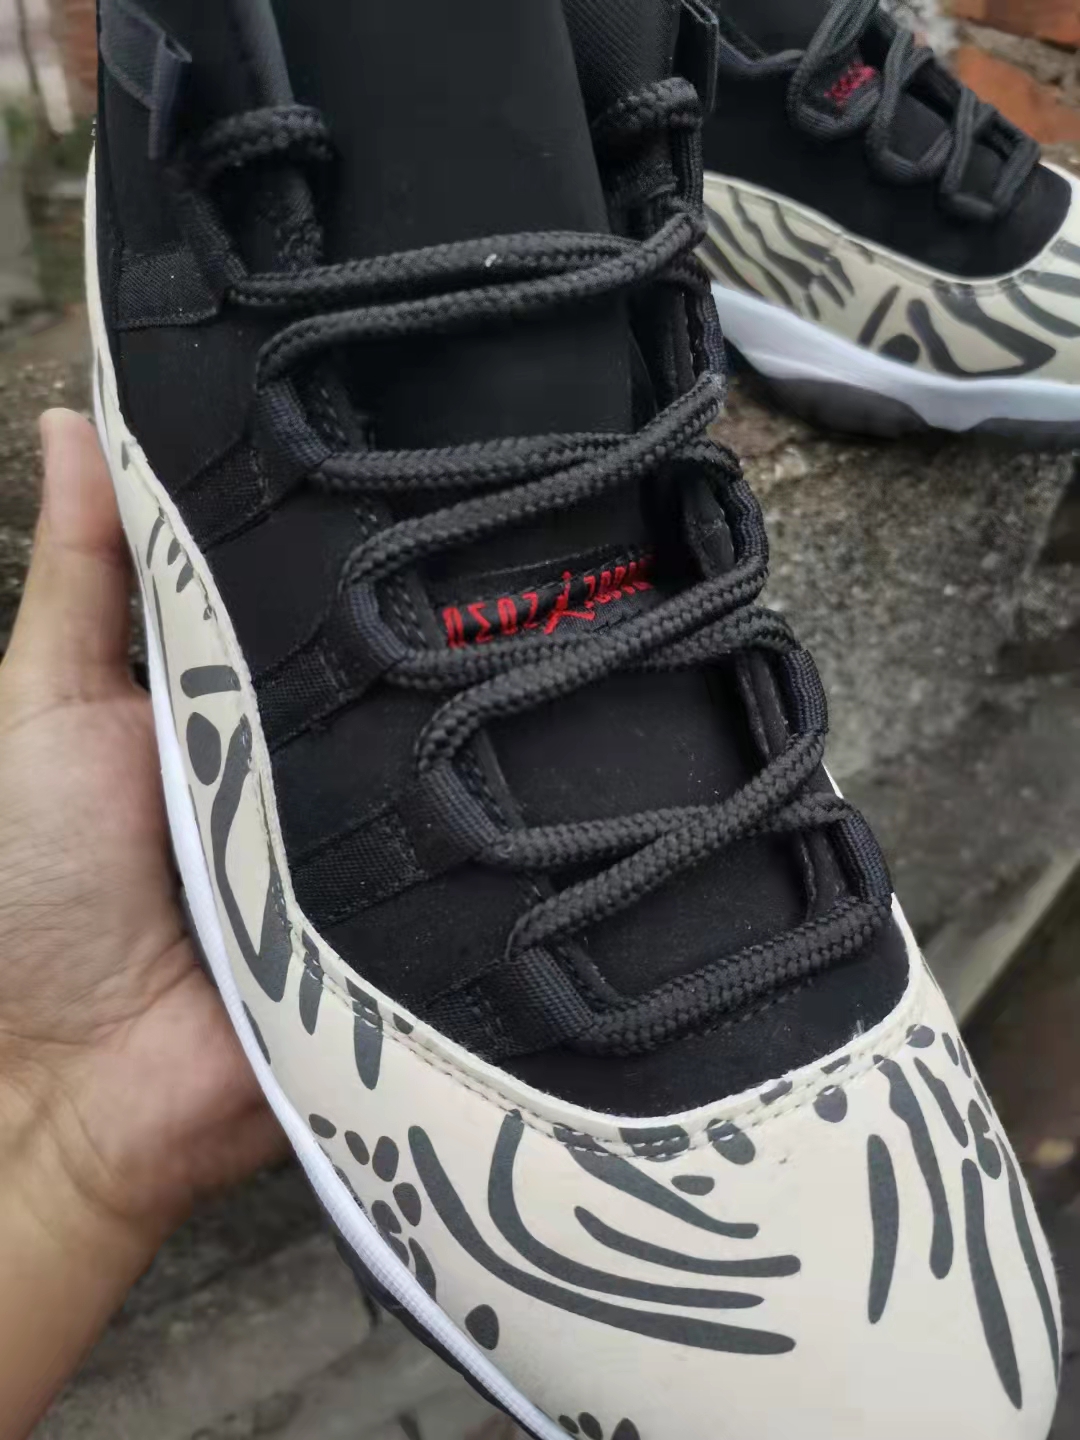 Air Jordan Retro 11 Sneakers For Men in 248812, cheap Jordan11, only $69!